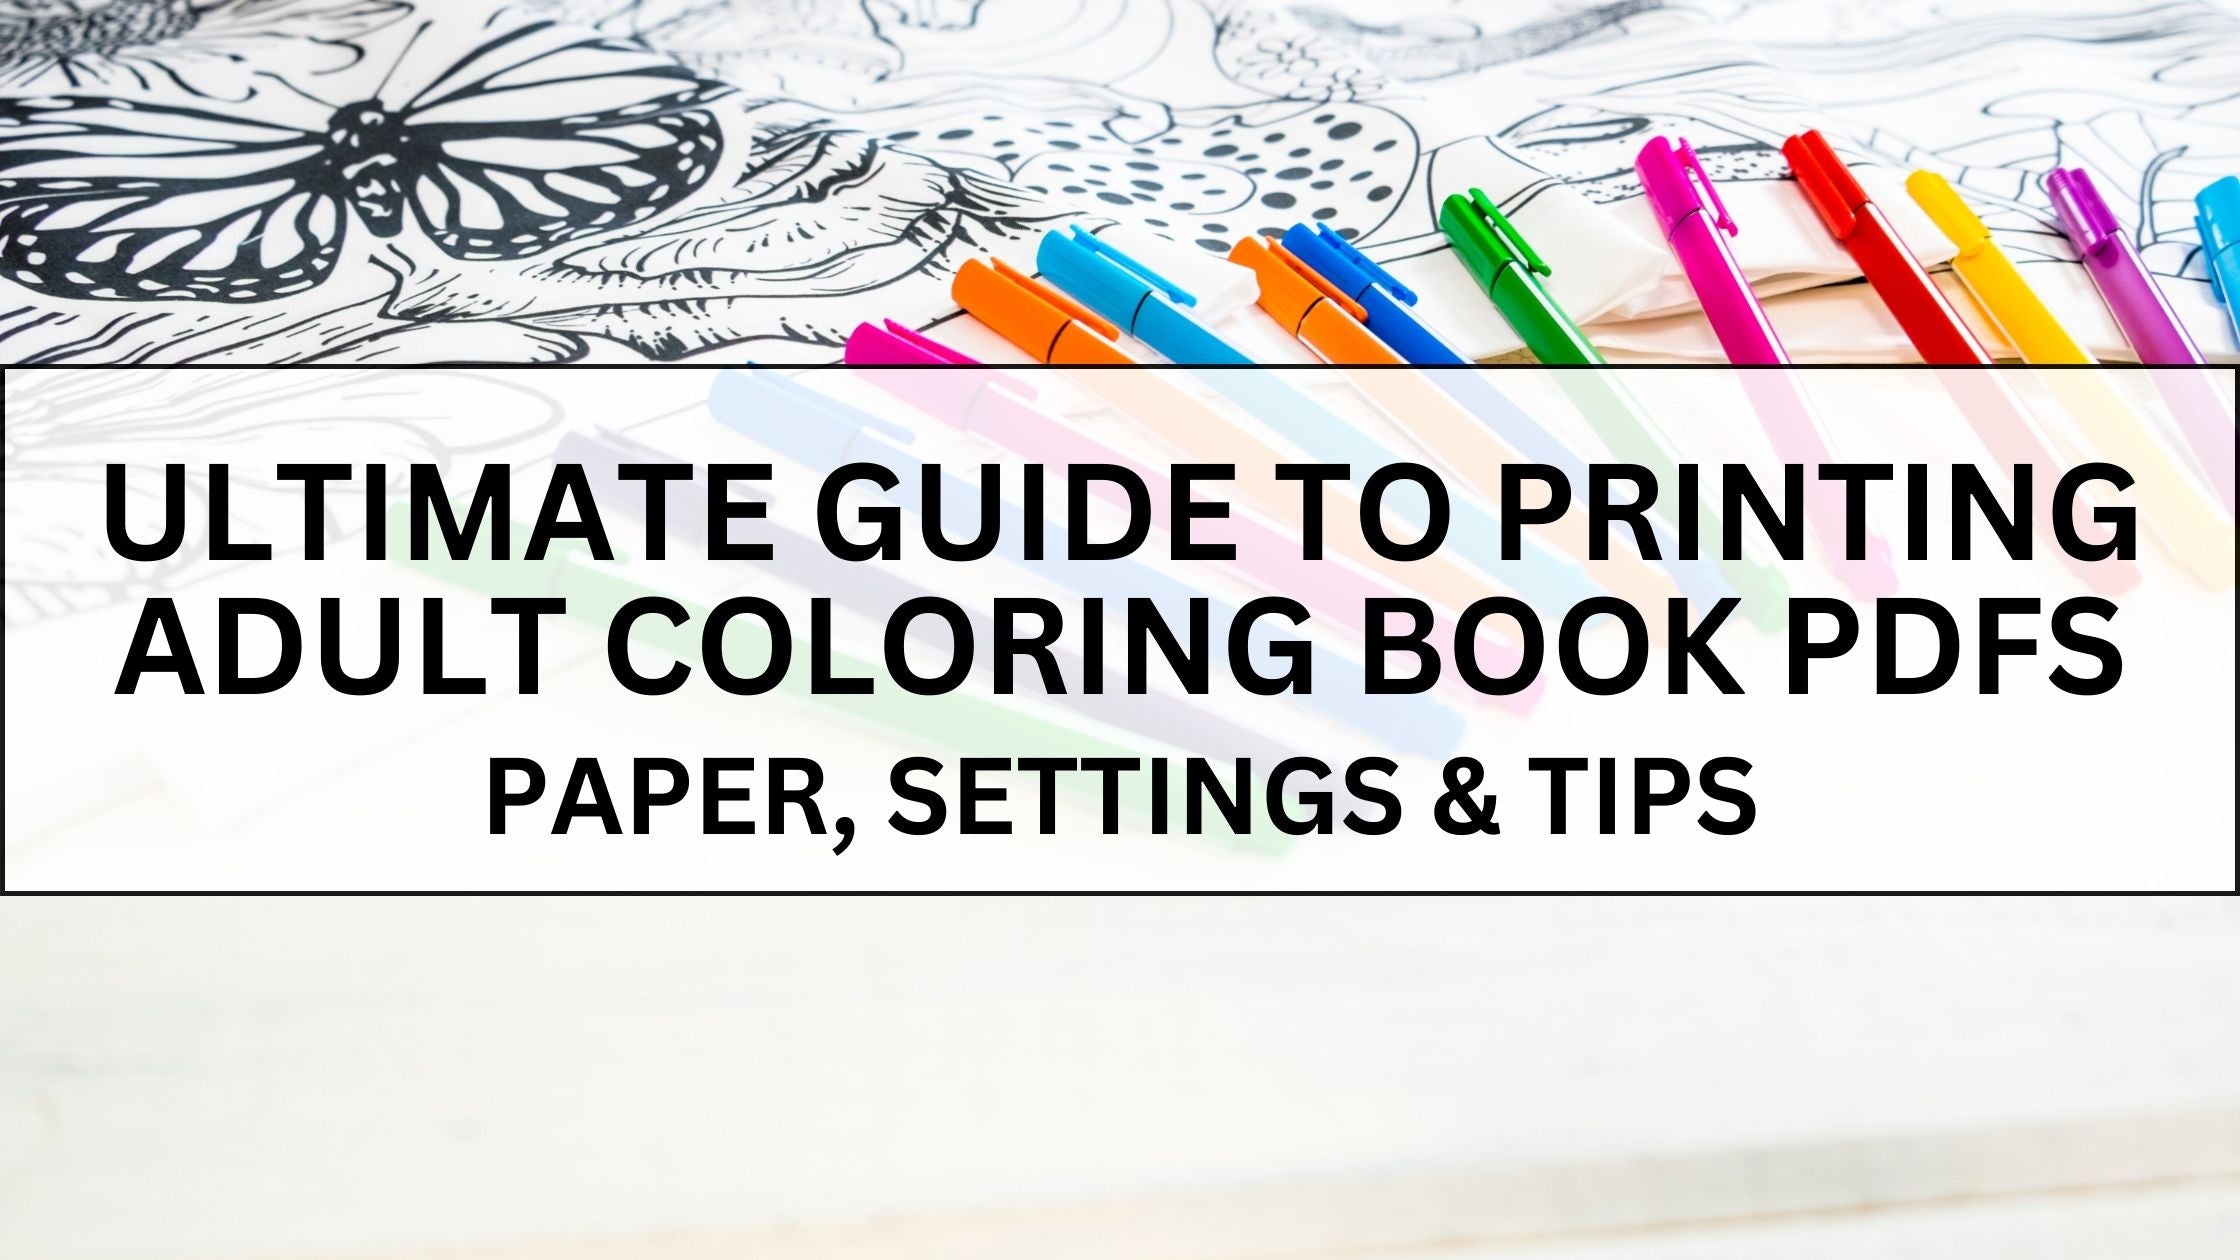 Coloring Book Printing